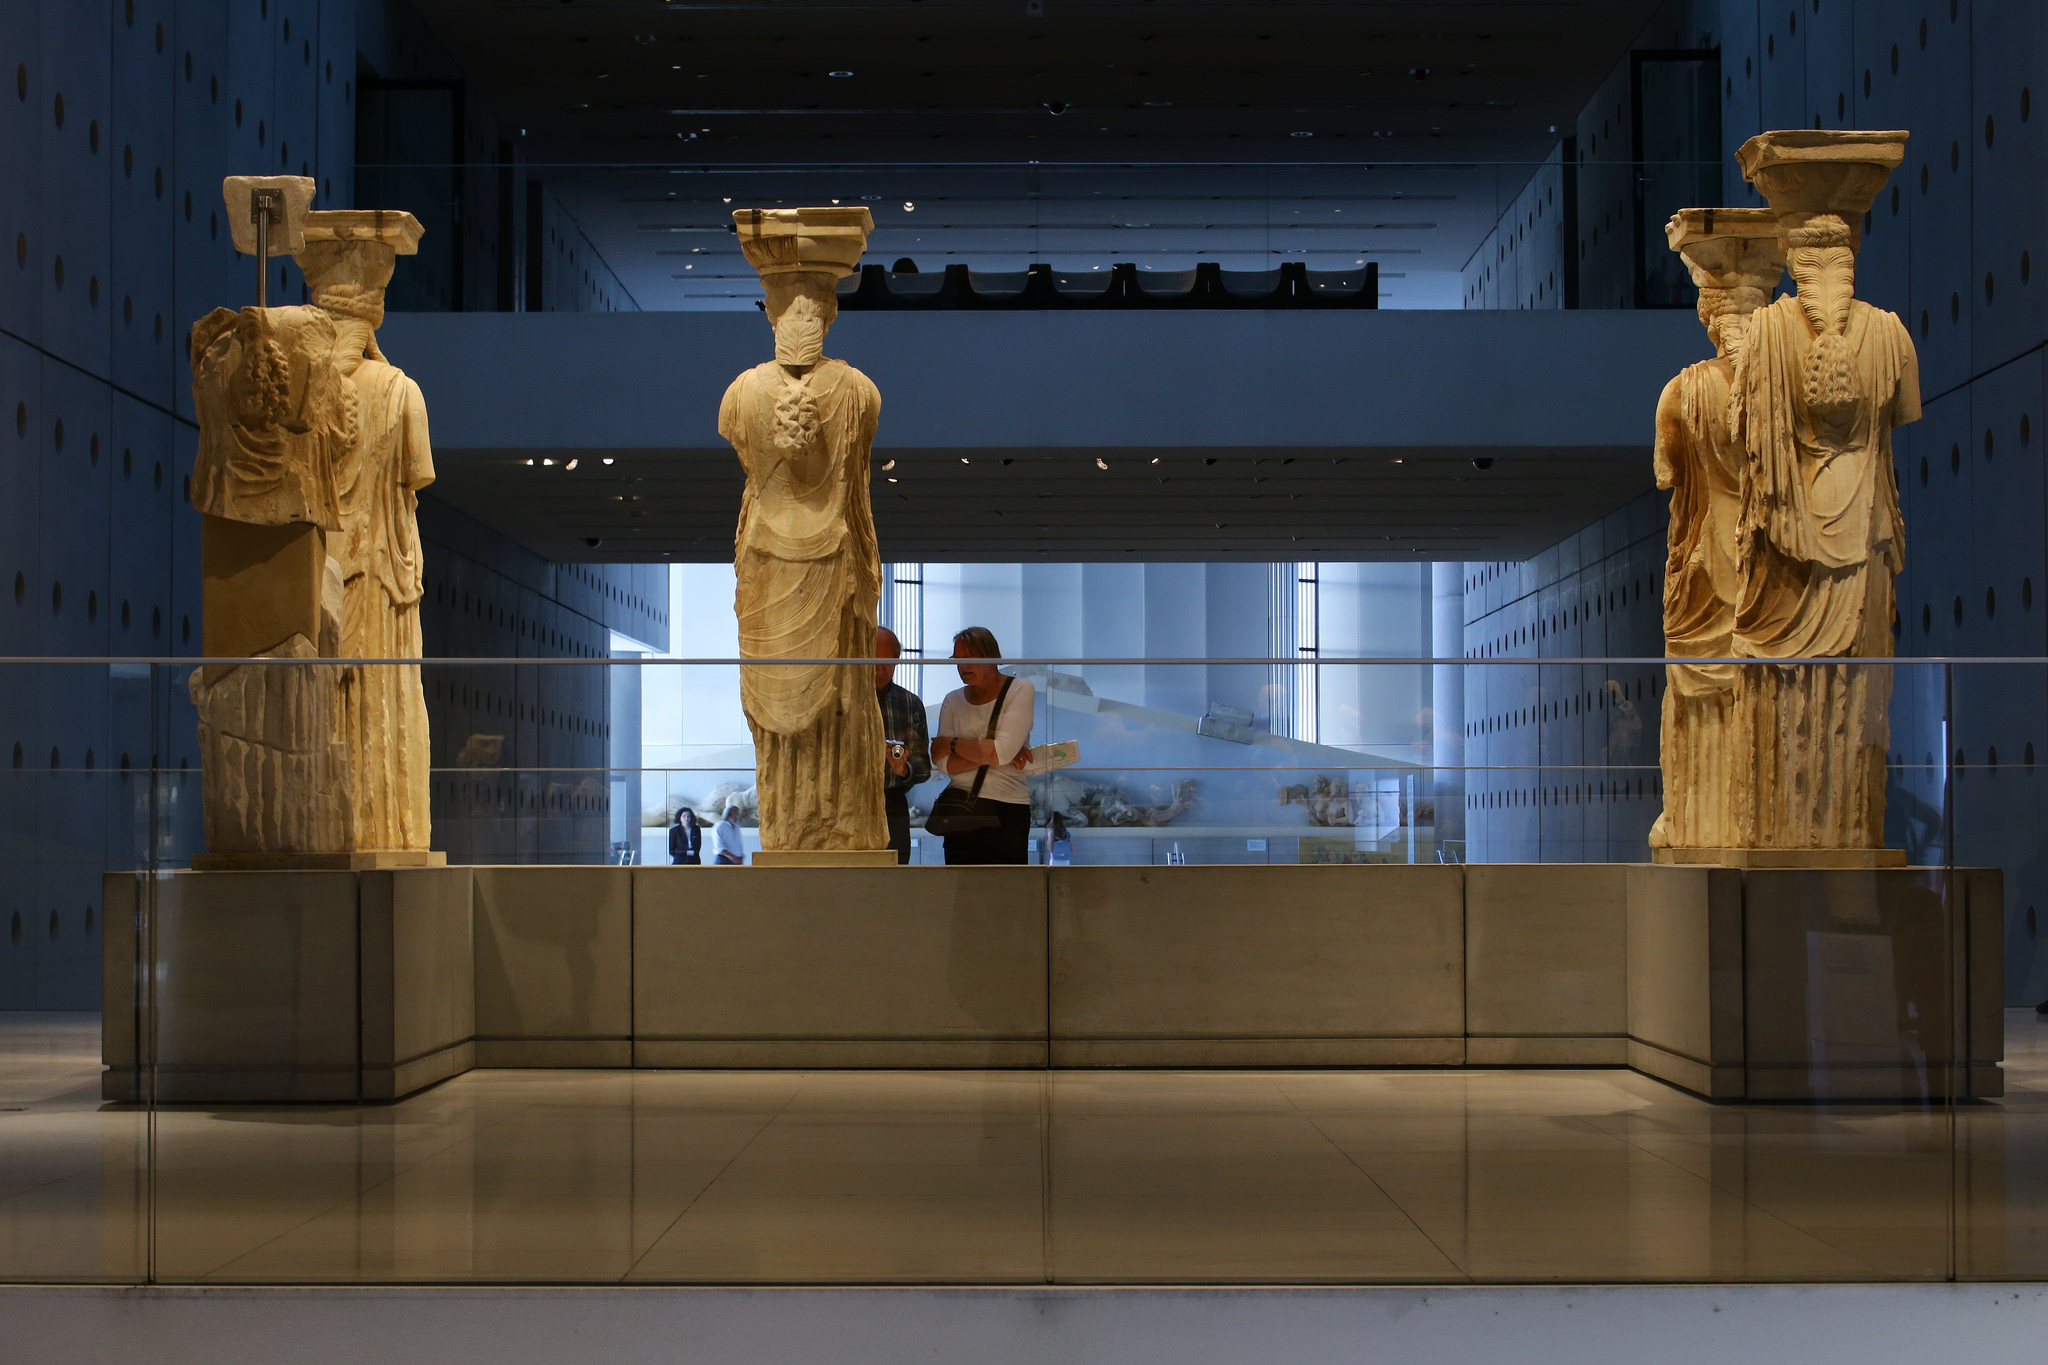 The magnificent Acropolis museum